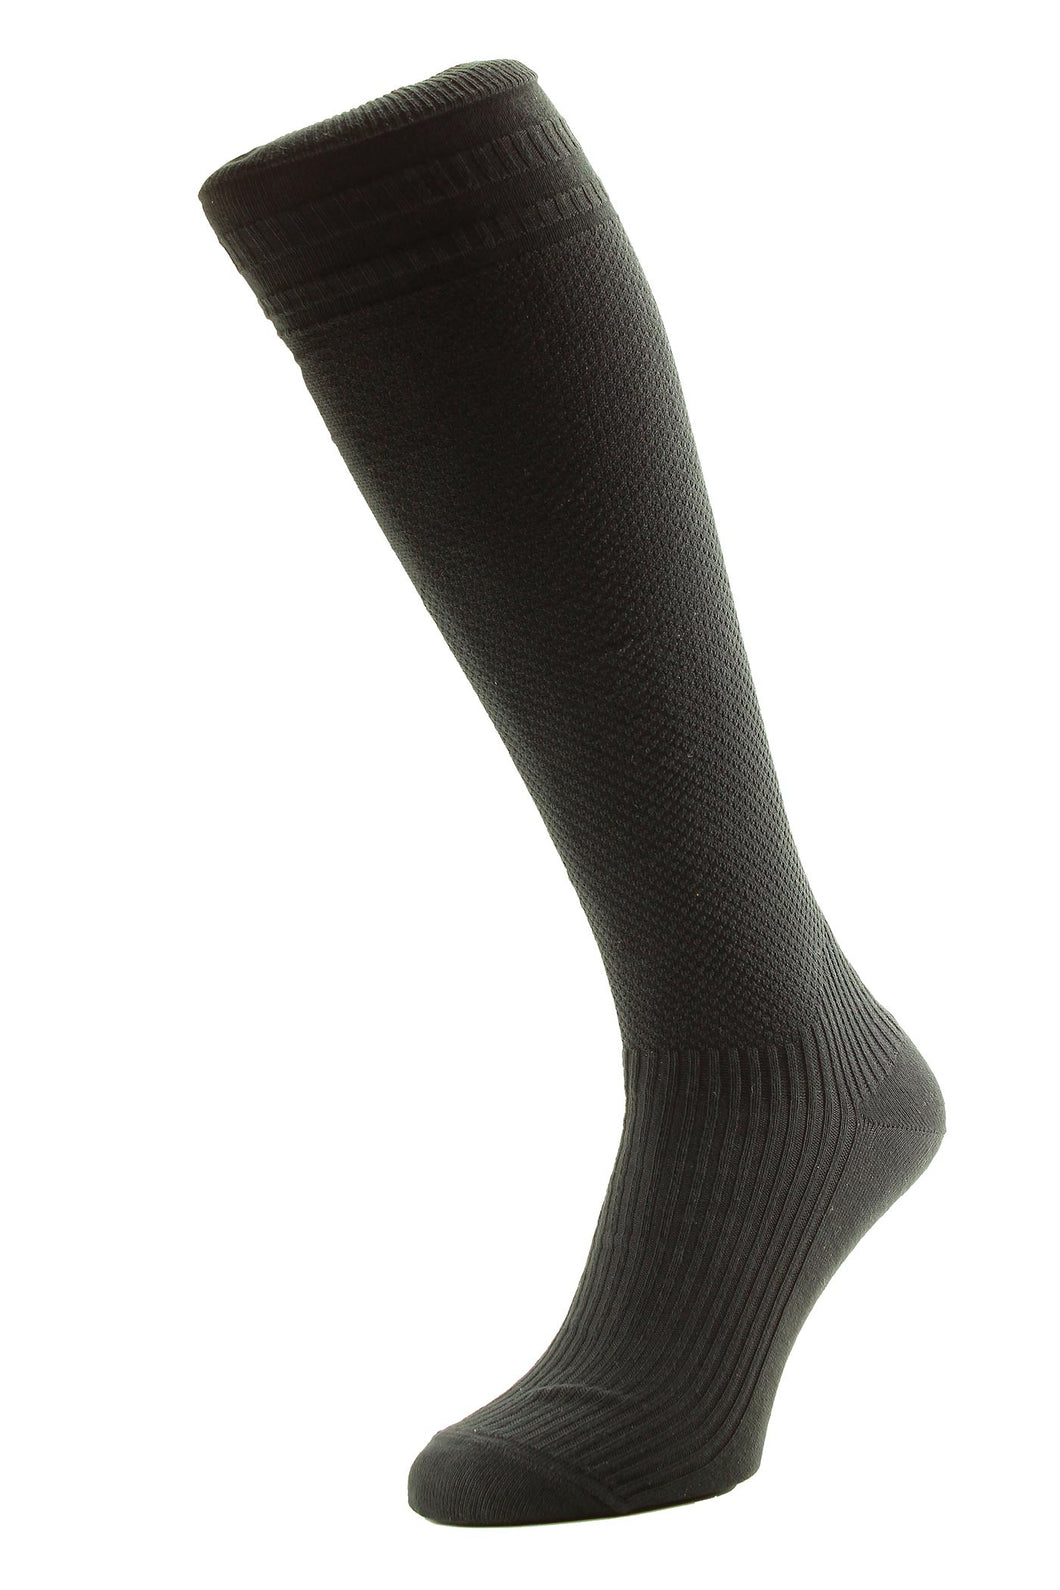 Hj Hj797 Soft Top Socks R